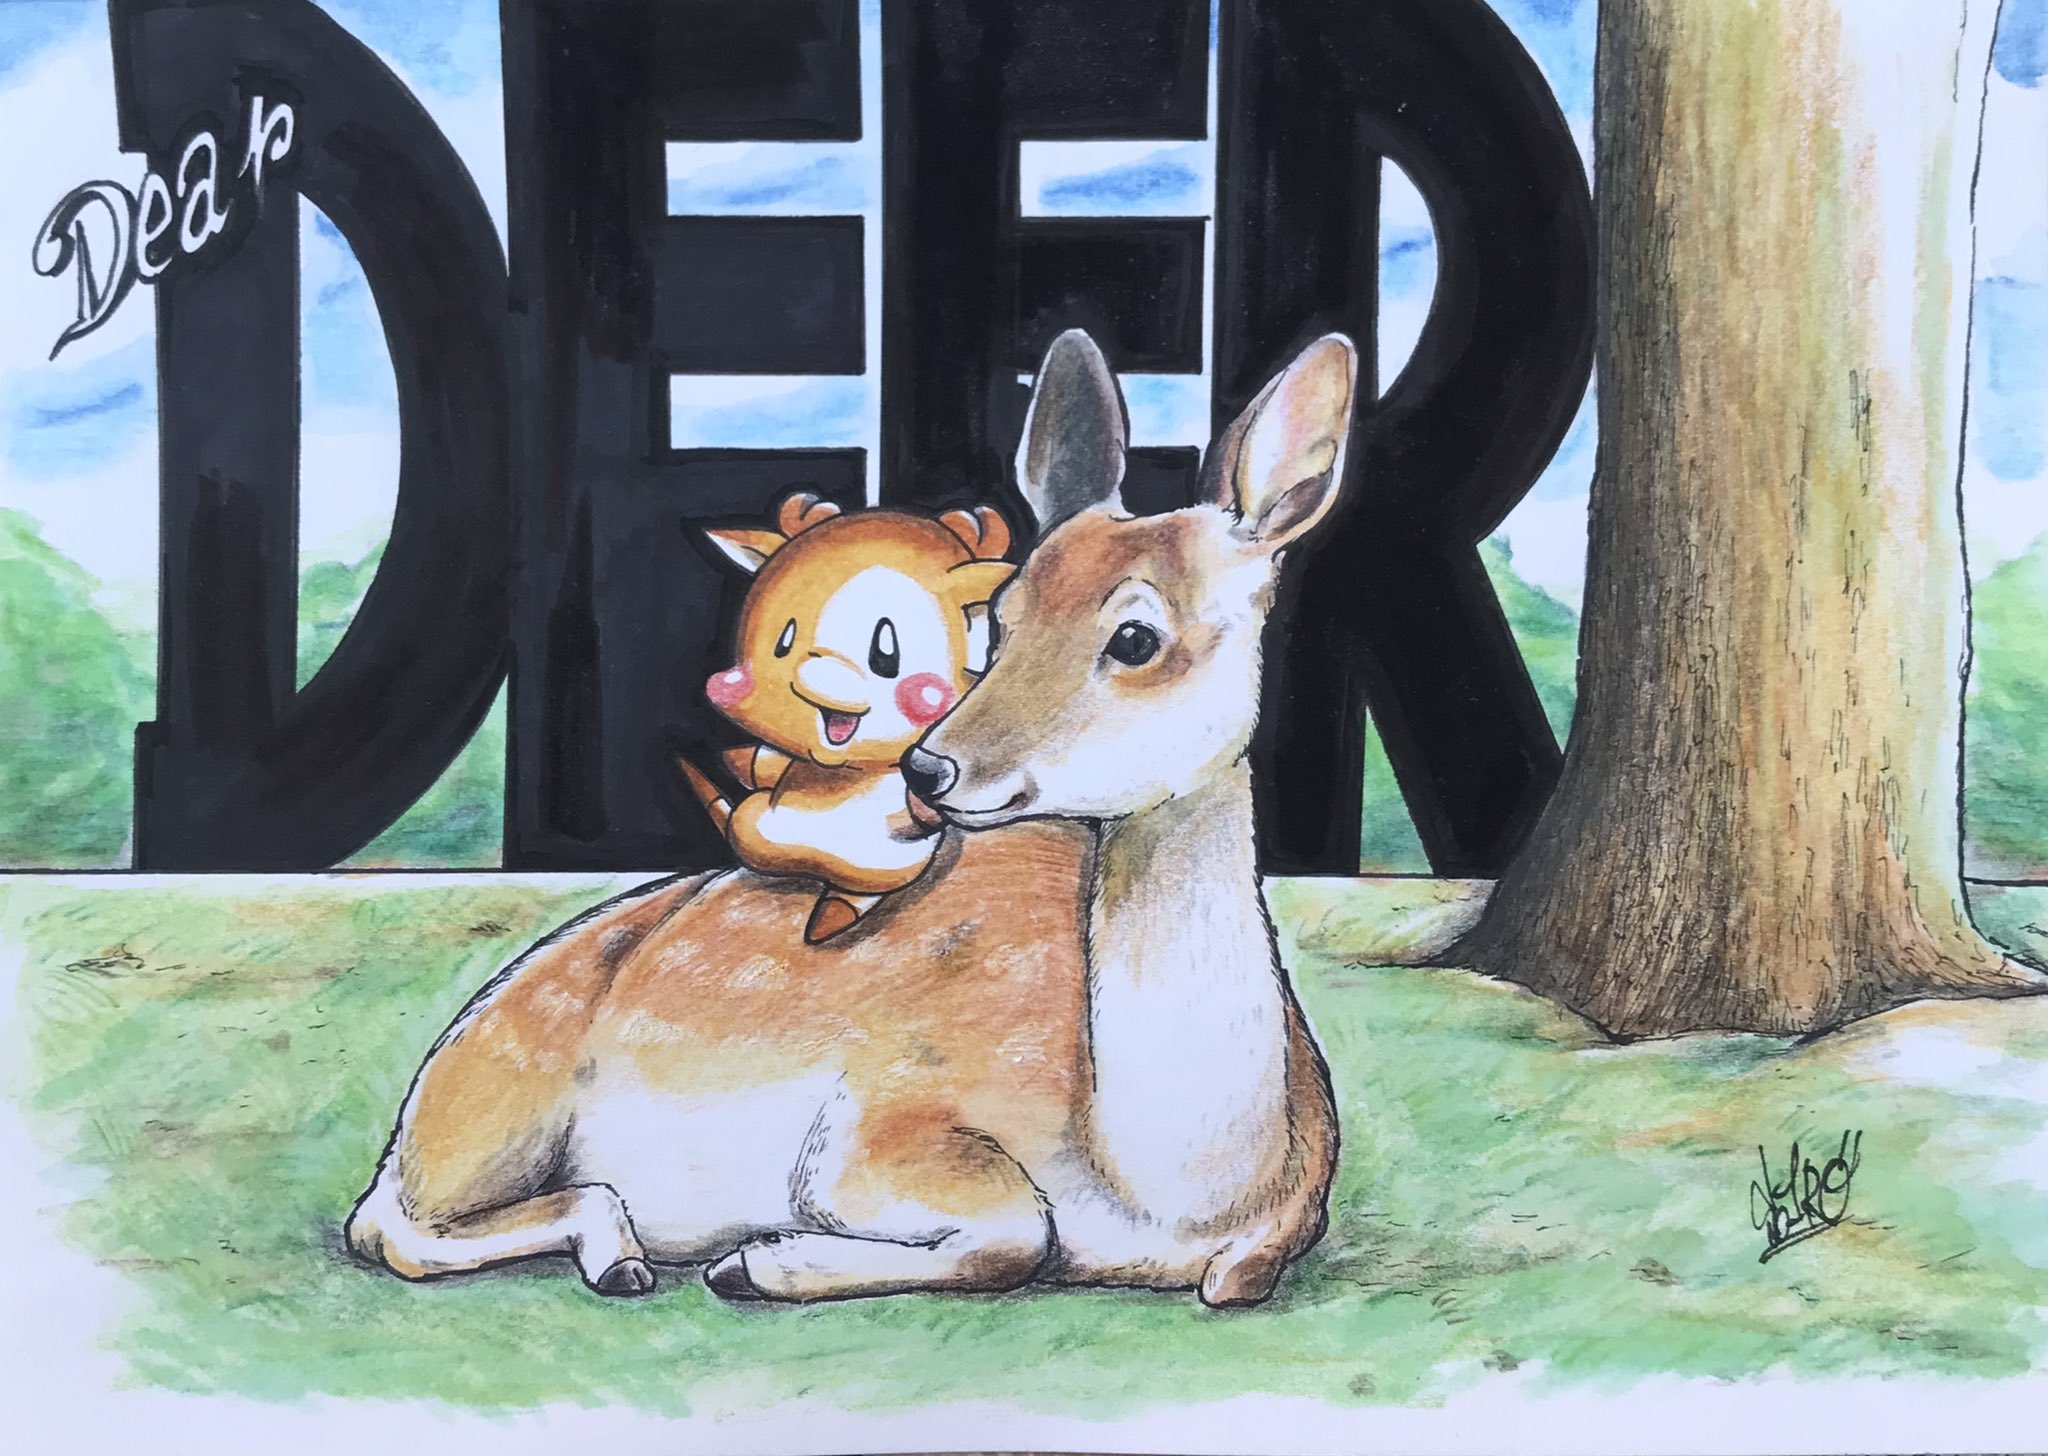 ソウイチロー Soichiro そして今日は奈良公園の141回目のお誕生日 今年はお祝いの花火は中止になったけど お祝いの気持ちは変わらず打ち上げまーす Deer Nara 奈良 鹿 Illustration イラスト Art Artist Illustrator 絵描き Painting